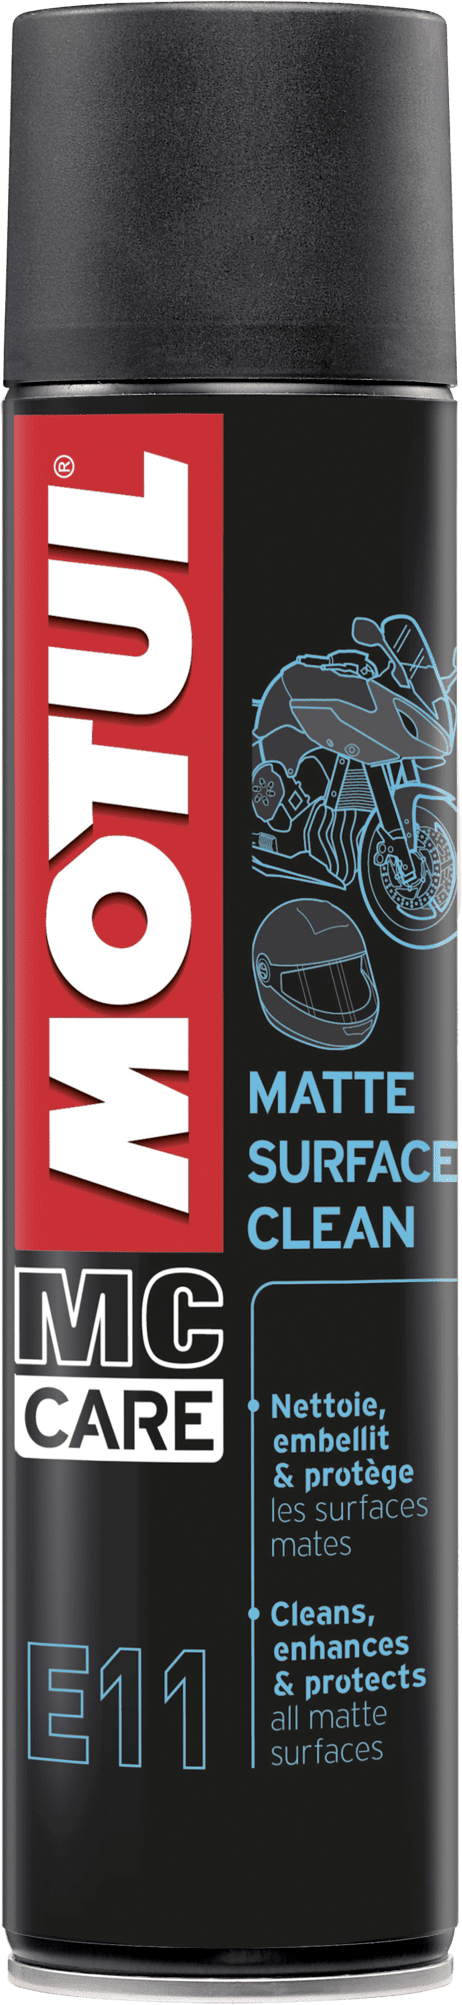 105051-400ML Elk onderdeel van de motorfiets heeft een specifieke verzorging nodig. Motul® MC Care™-lijn, gelanceerd in 2011, is ontwikkeld om de motorfiets, de motorrijder en zijn uitrusting volledig te onderhouden en te verzorgen.